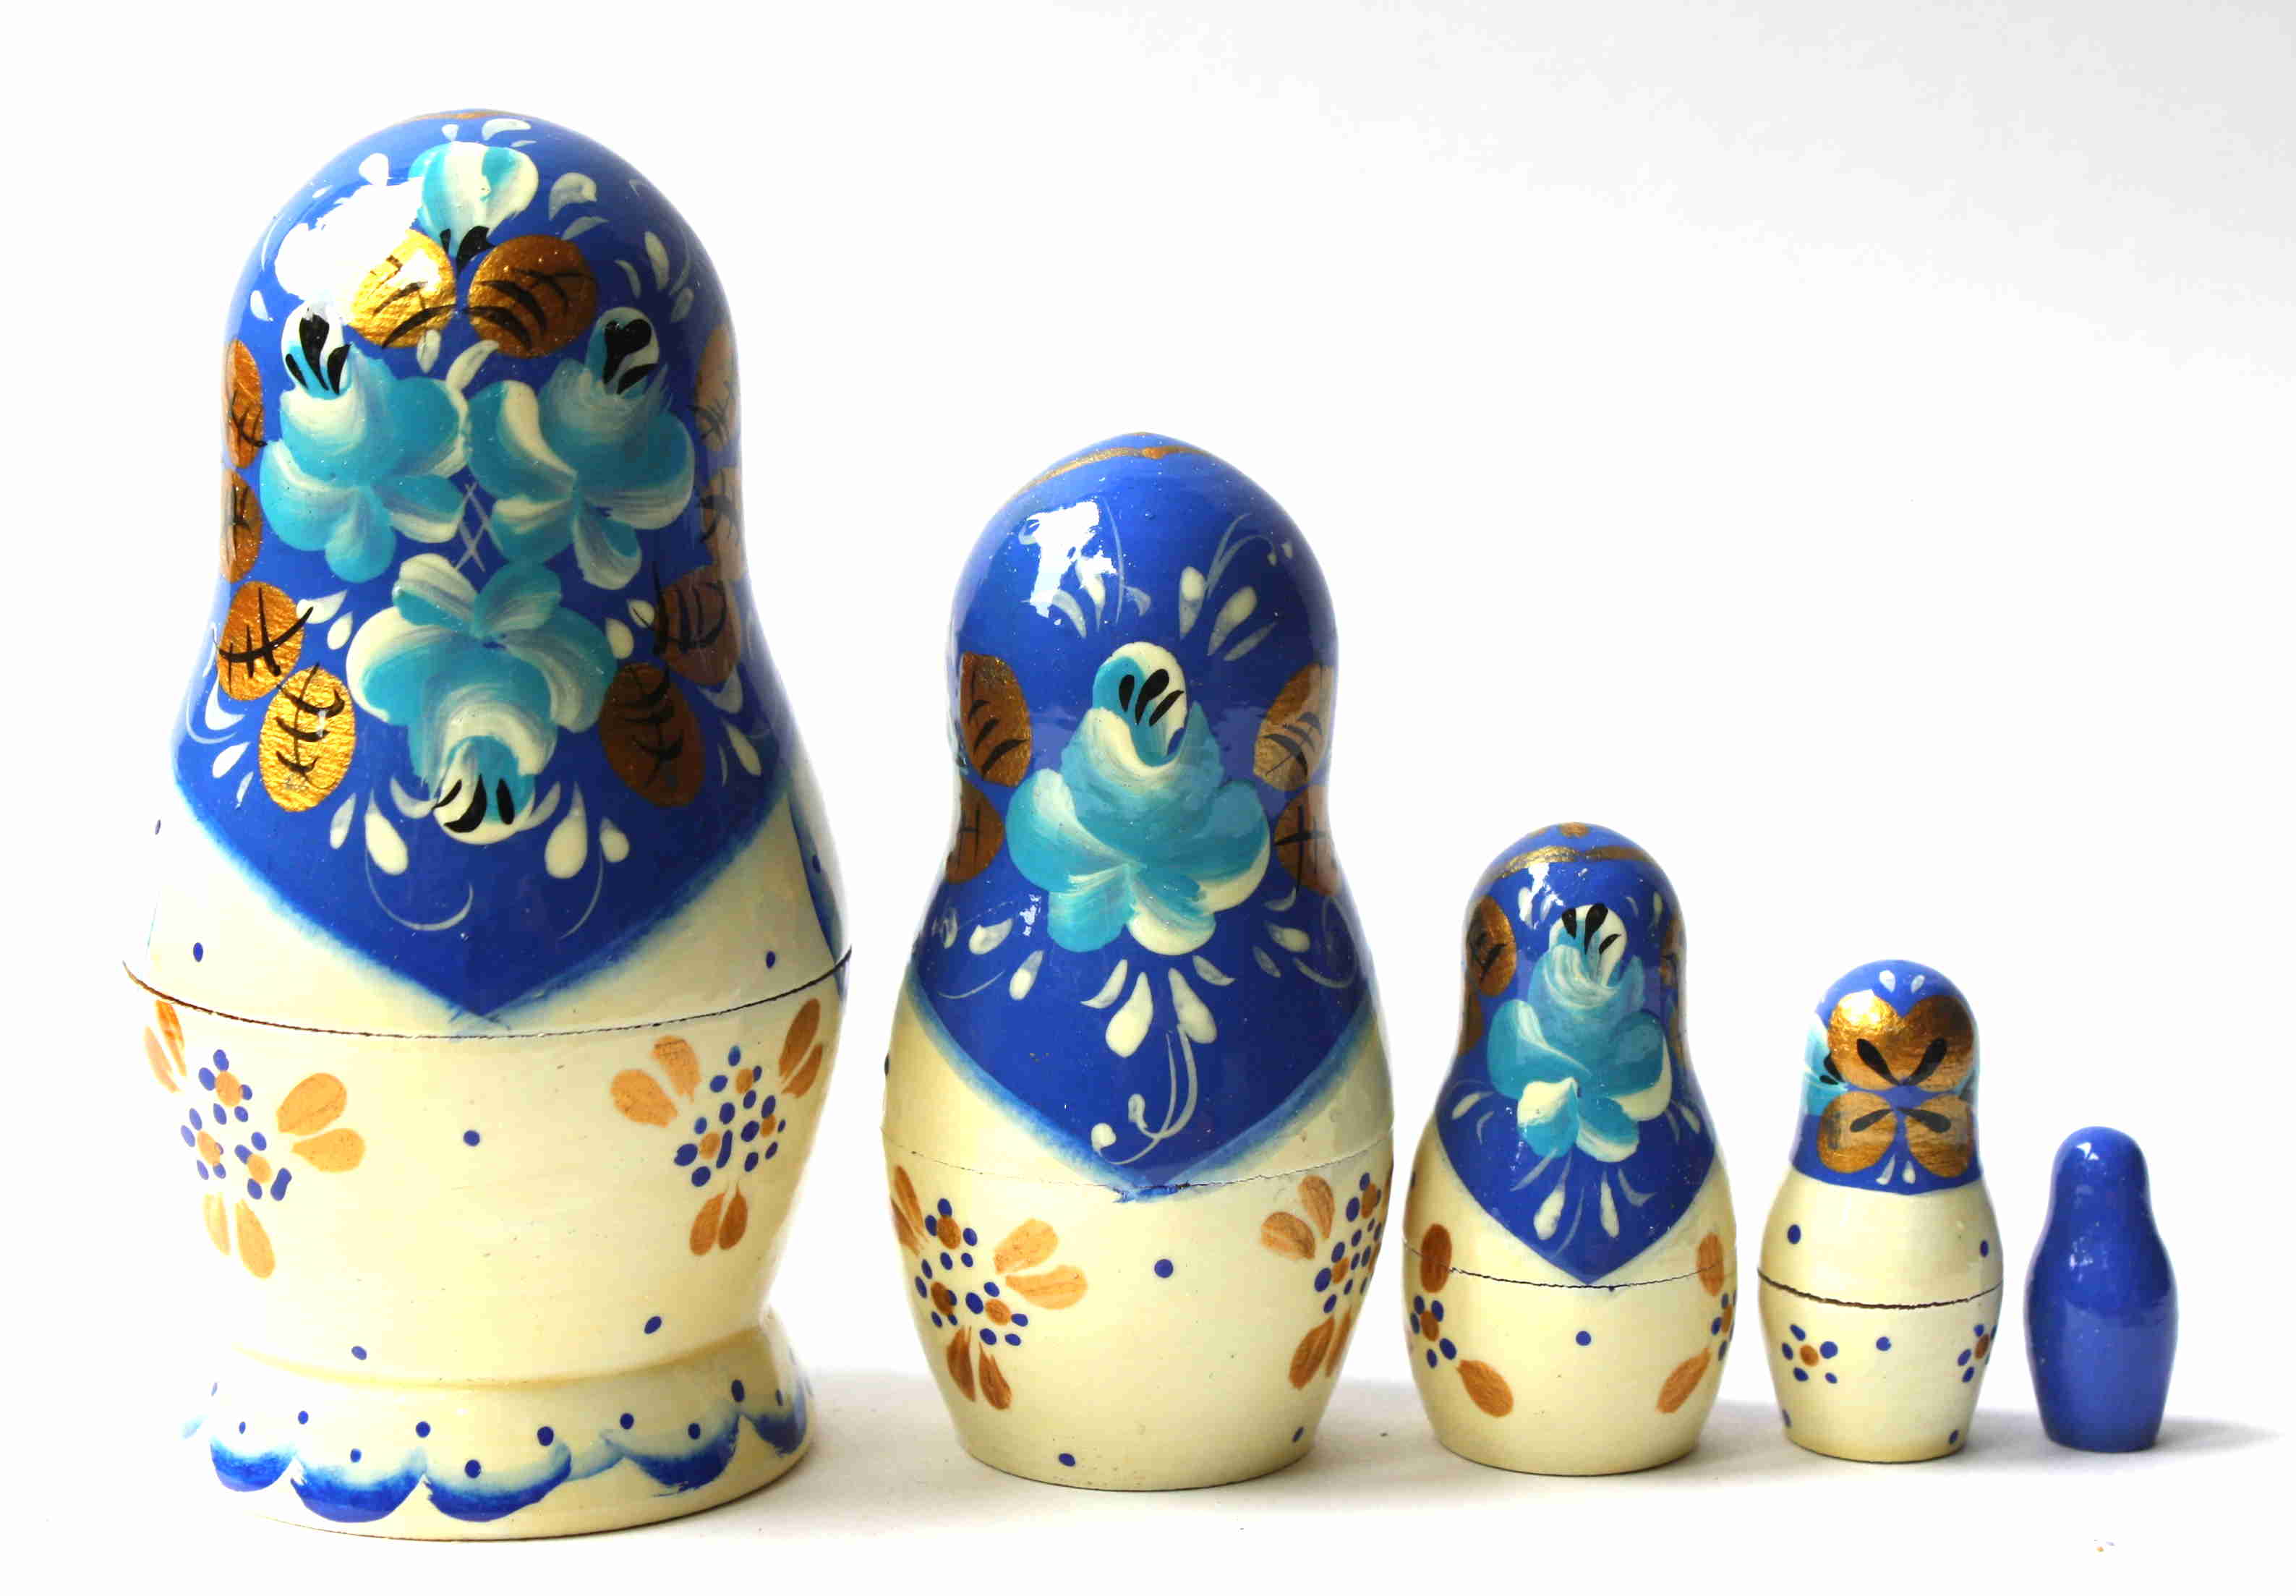 Artists Matryoshka White with blue shawl & monastry (5 nested set)